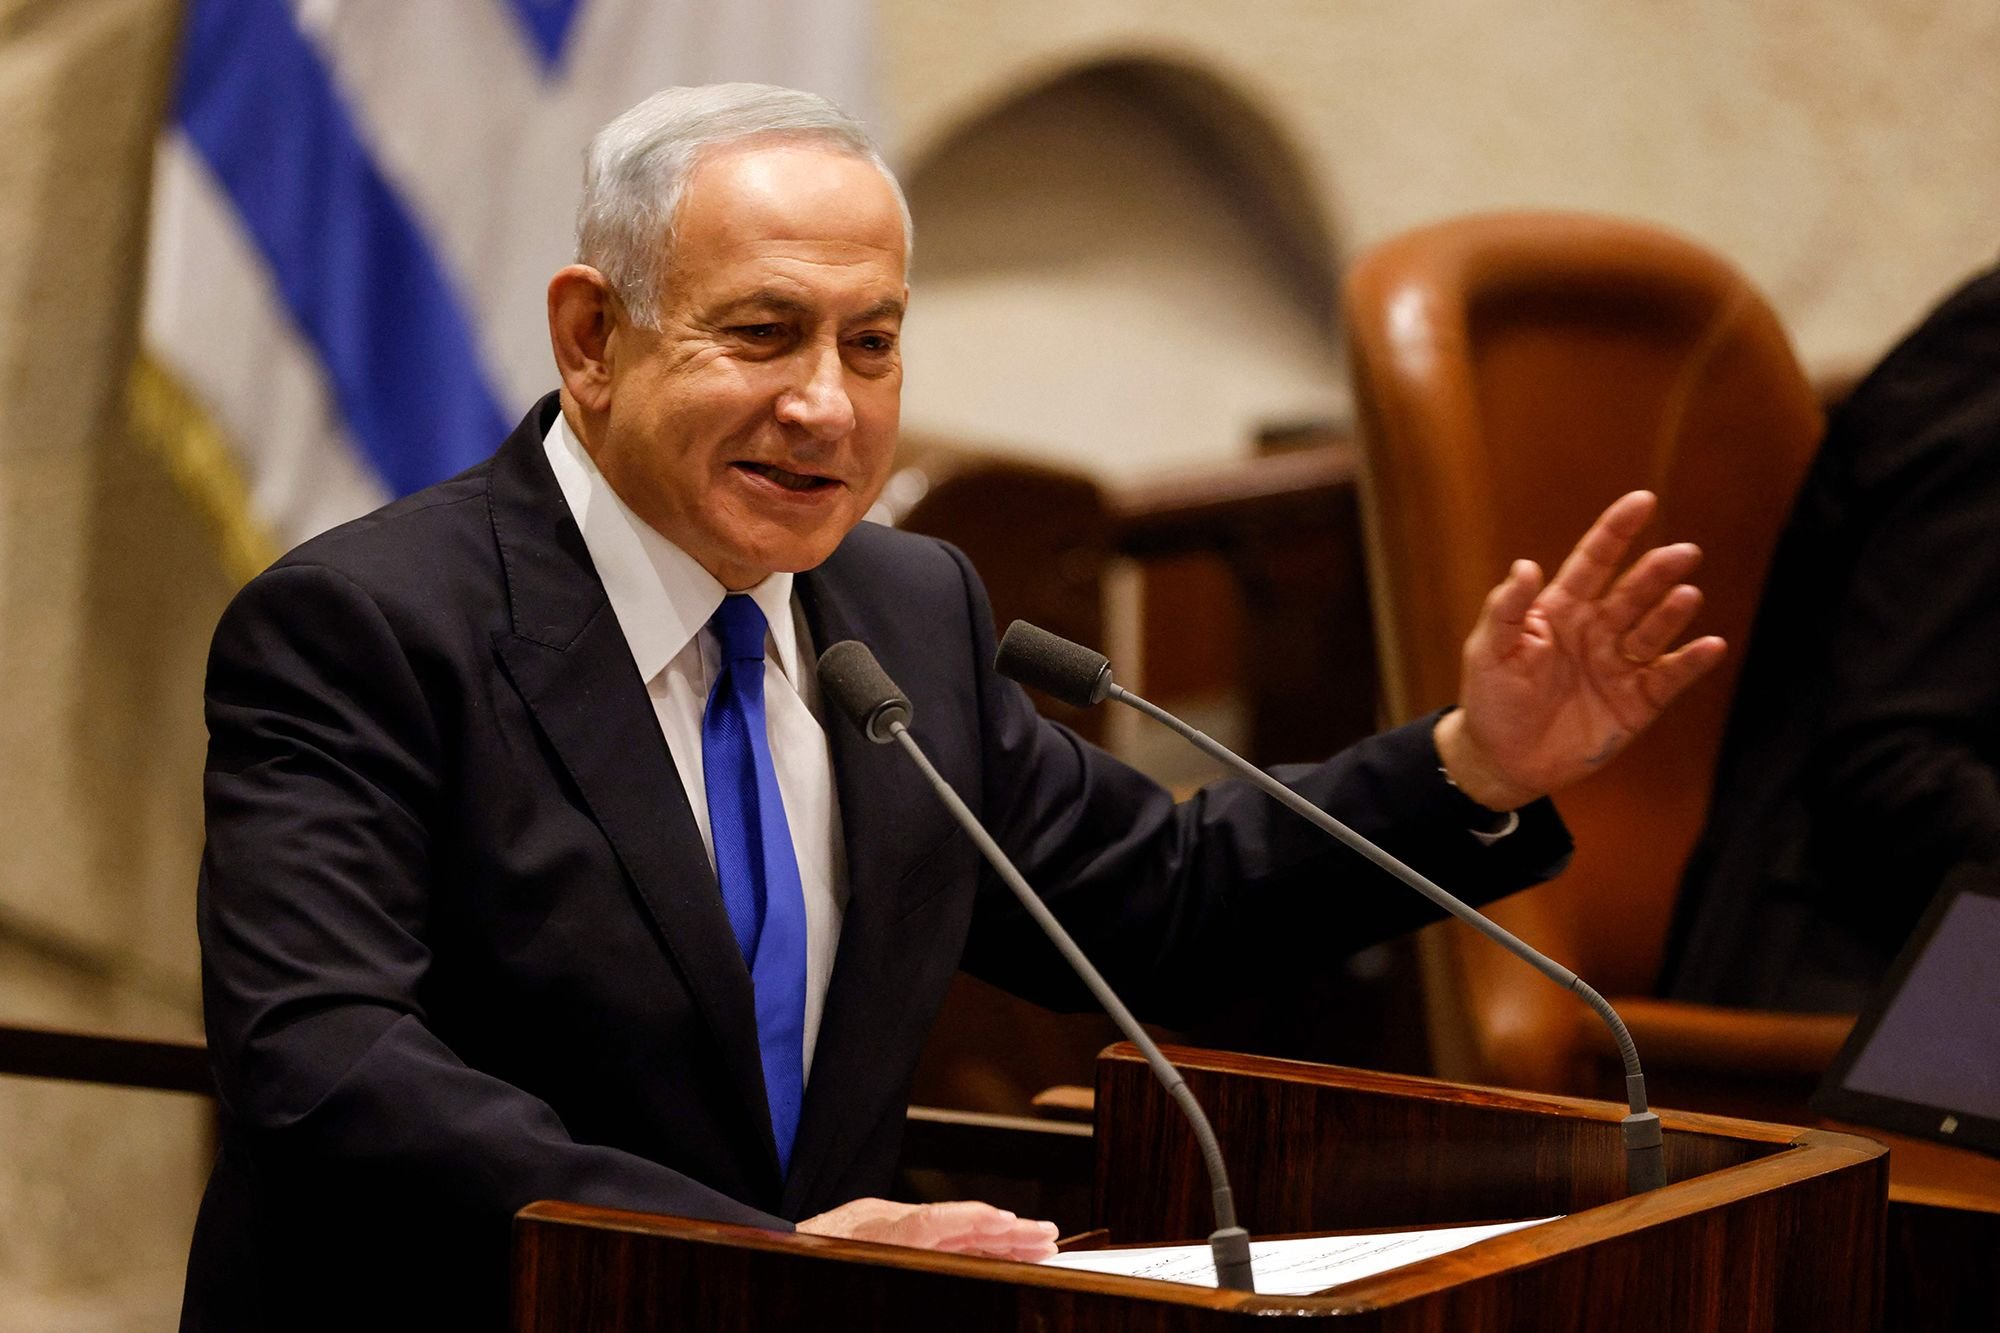  Mesajul transmis de Marcel Ciolacu după ce Benjamin Netanyahu a fost învestit premier al Israelului